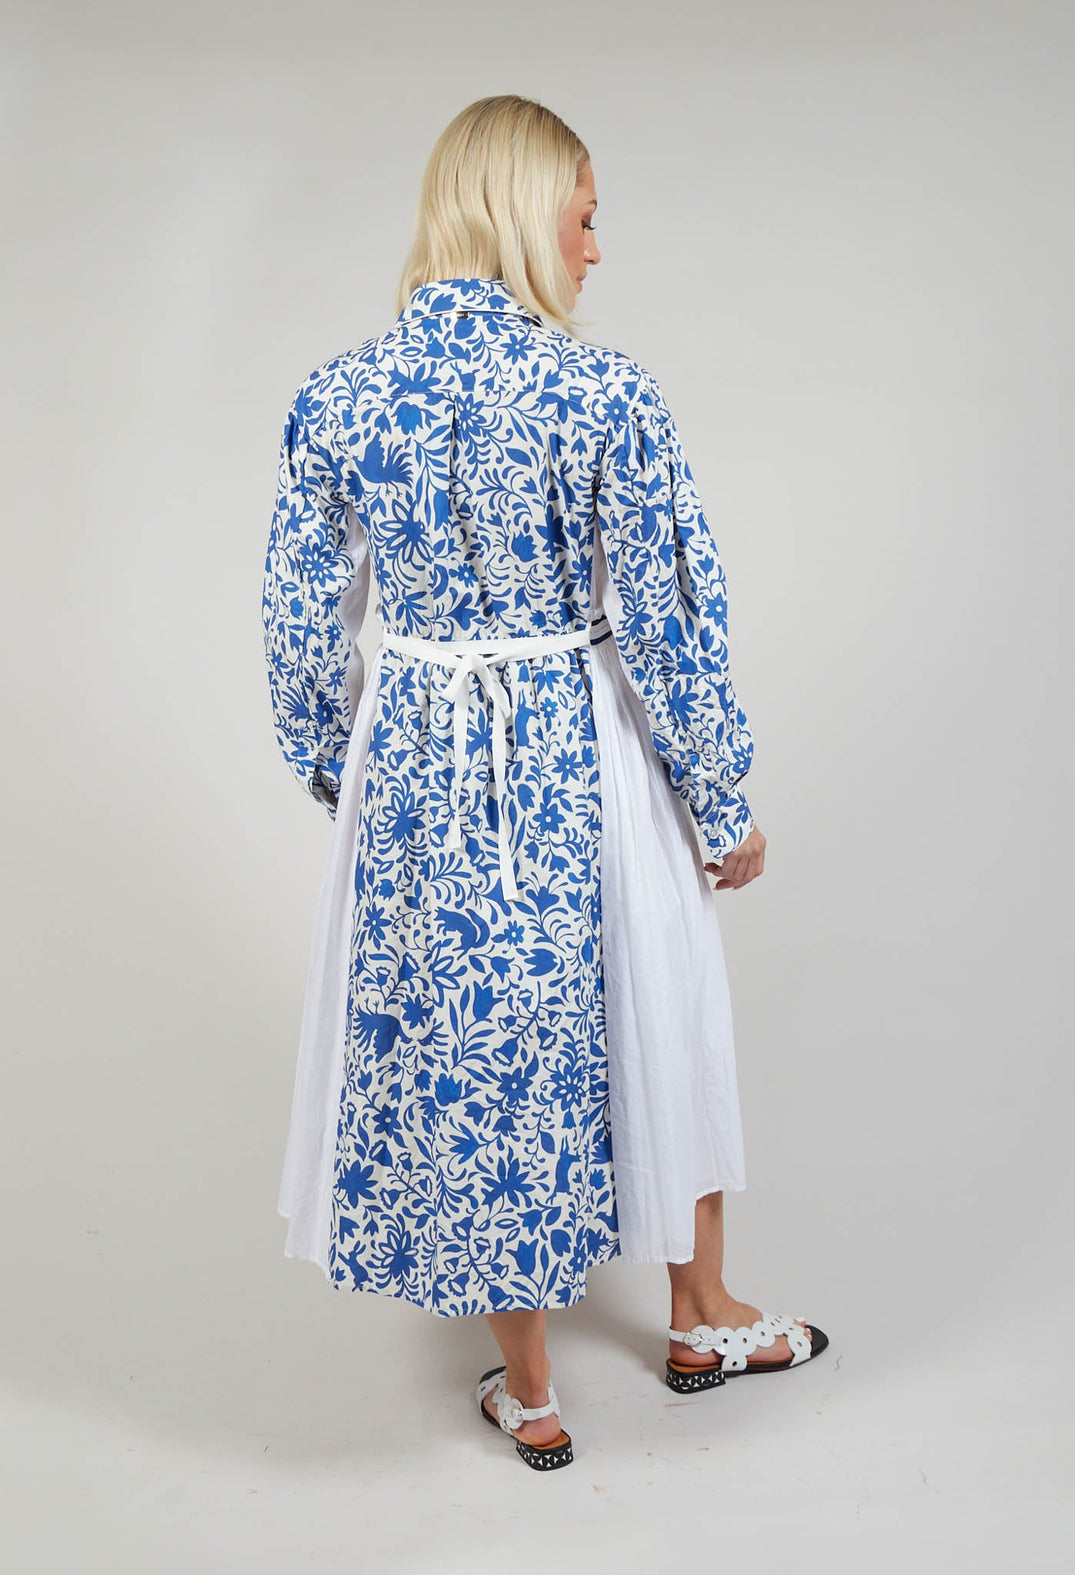 Beloved Dress in Blue Floral